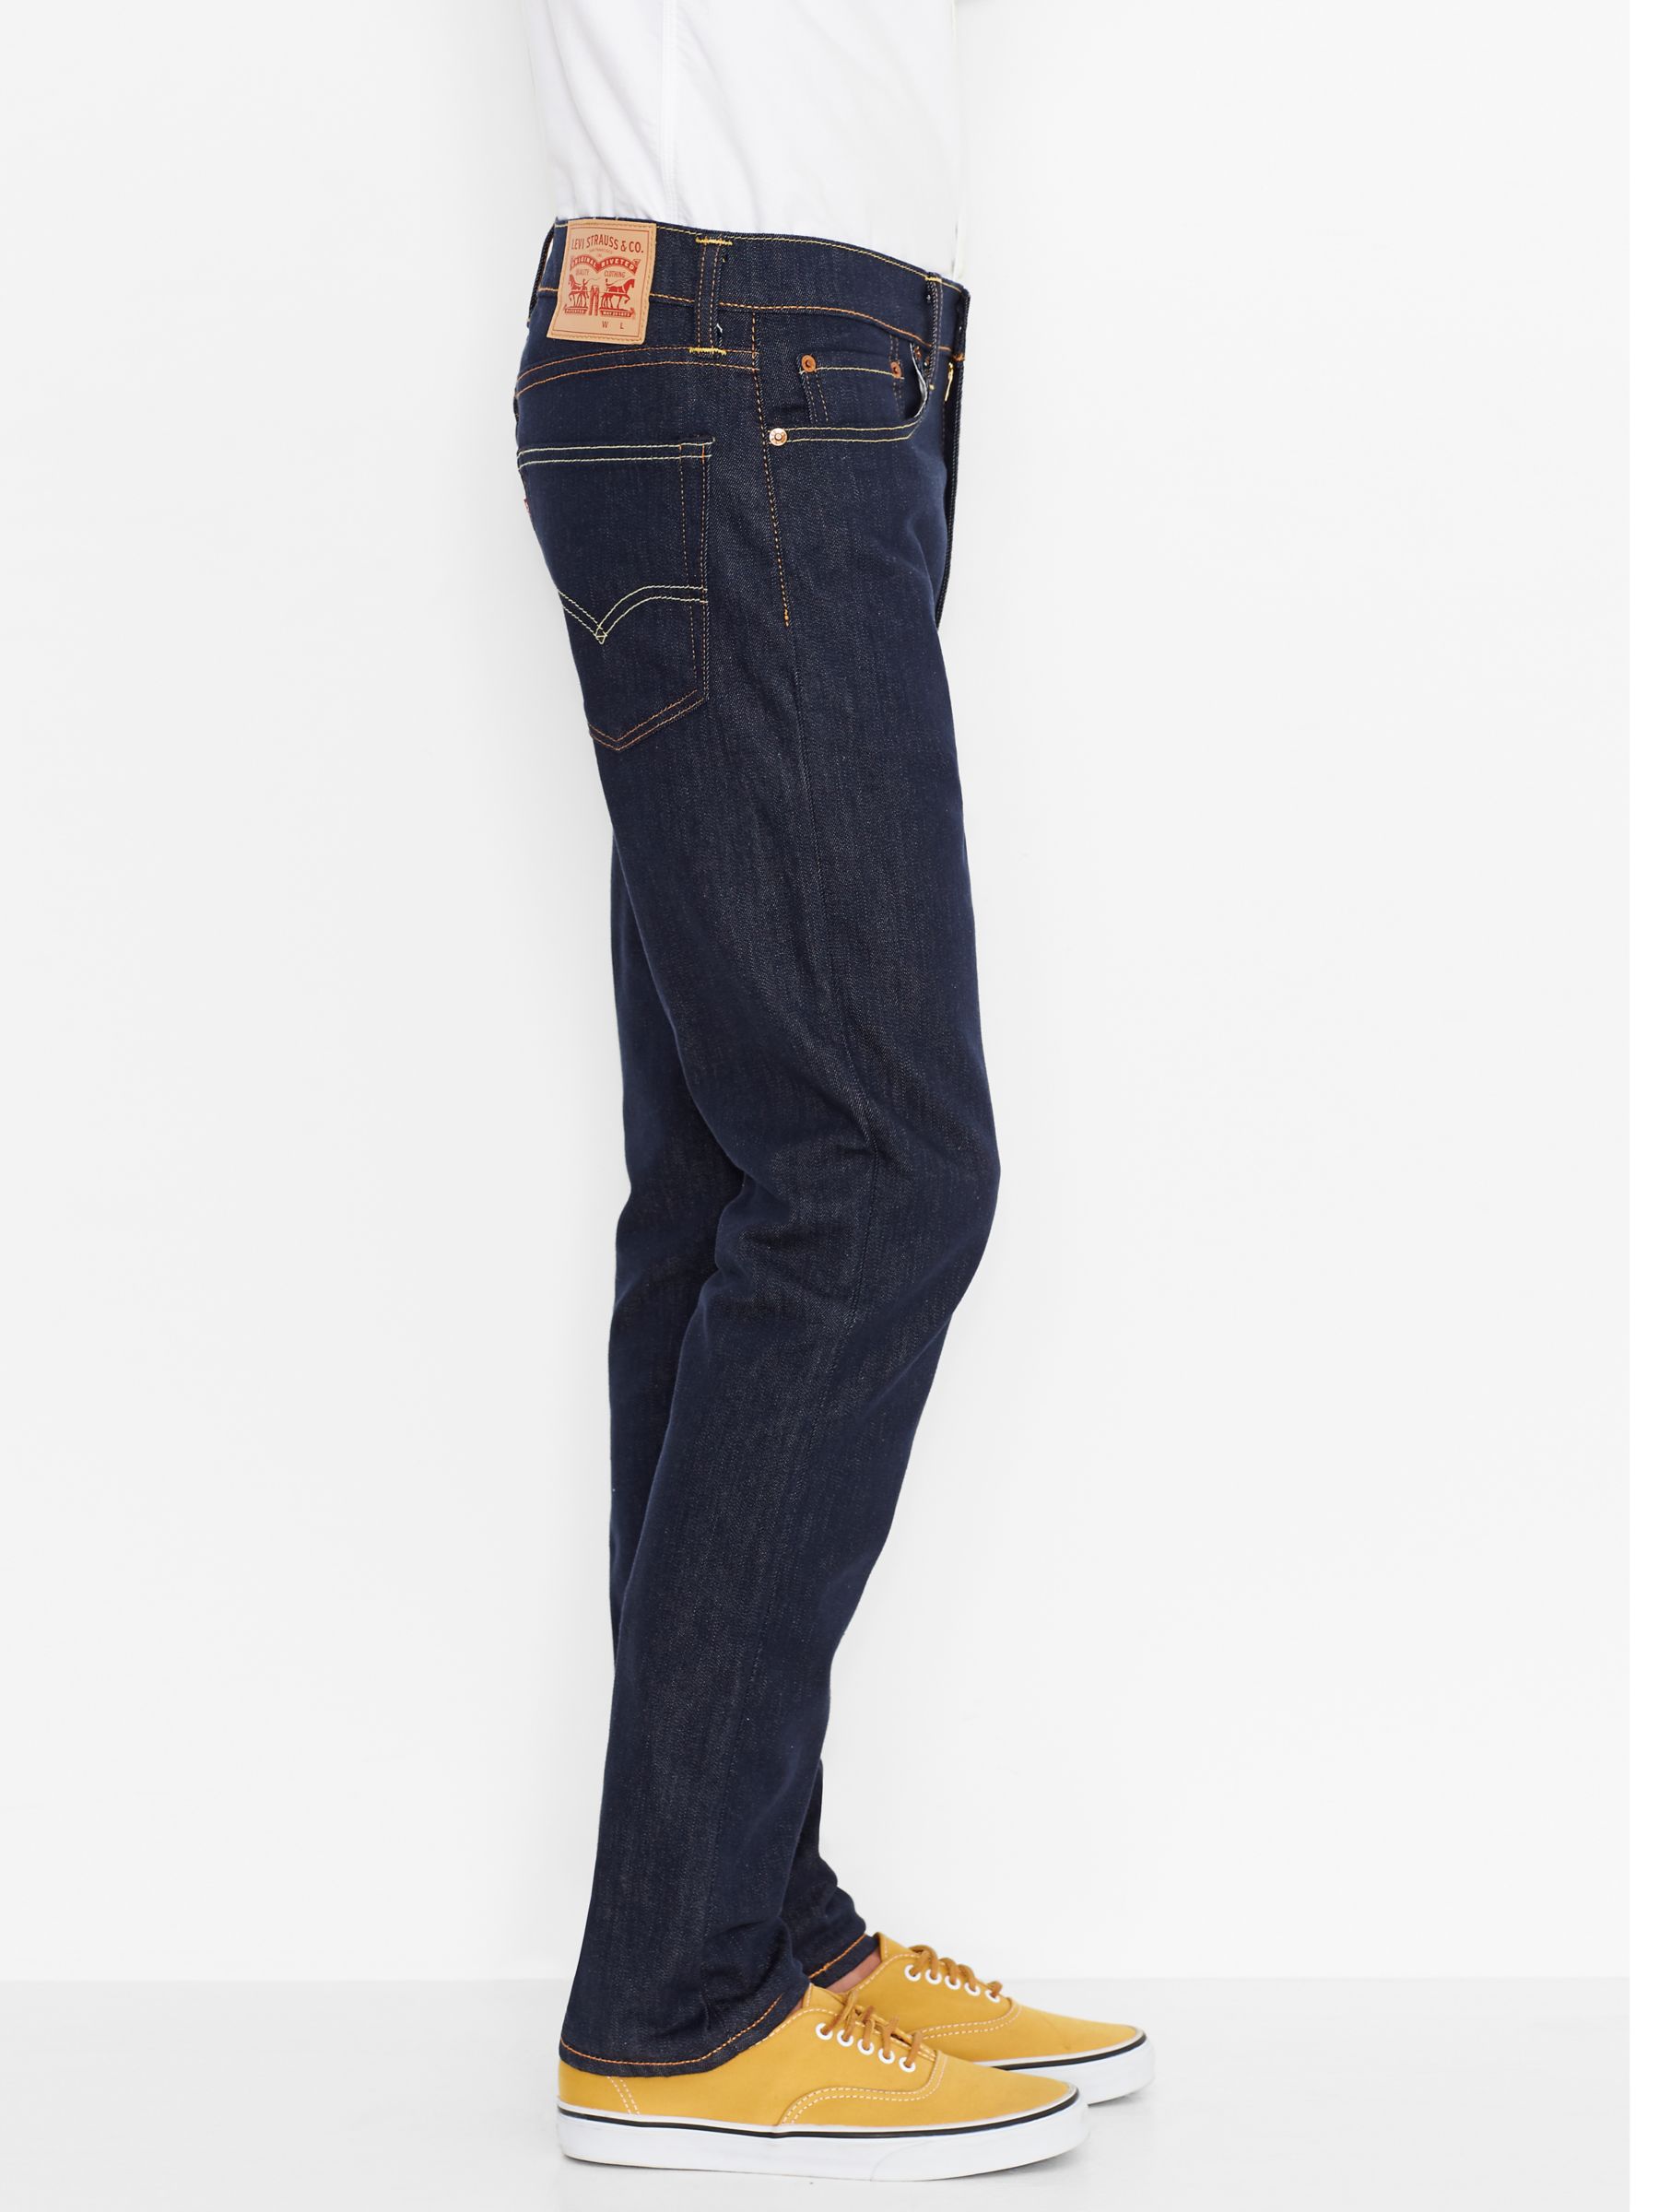 levi's 522 jeans